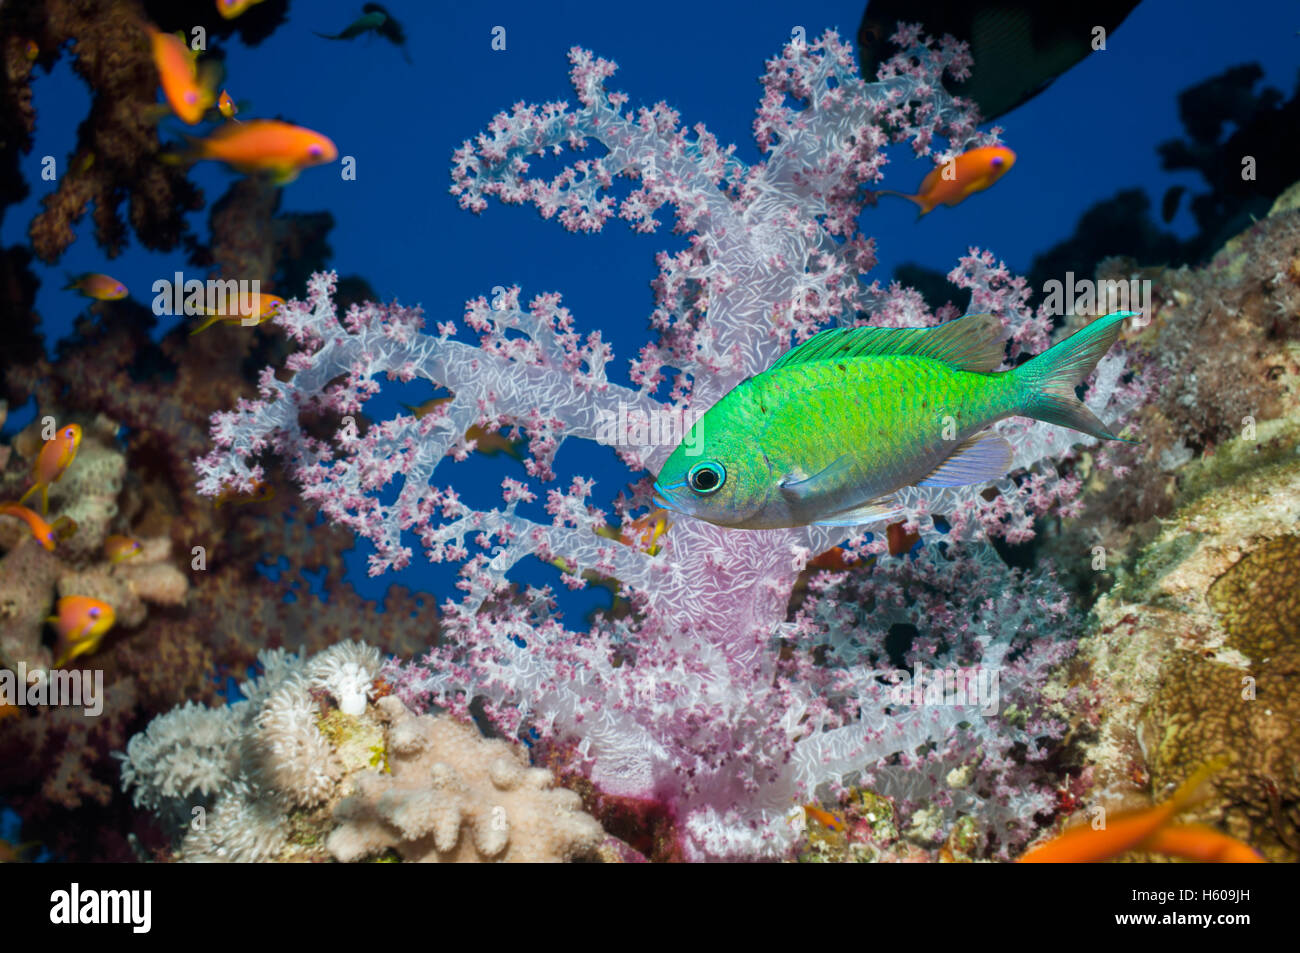 Blau-grüne Chromis (Chromis Viridis) vorbei an Weichkorallen (Dendronephthya sp) schwimmen.  Ägypten, Rotes Meer. Stockfoto